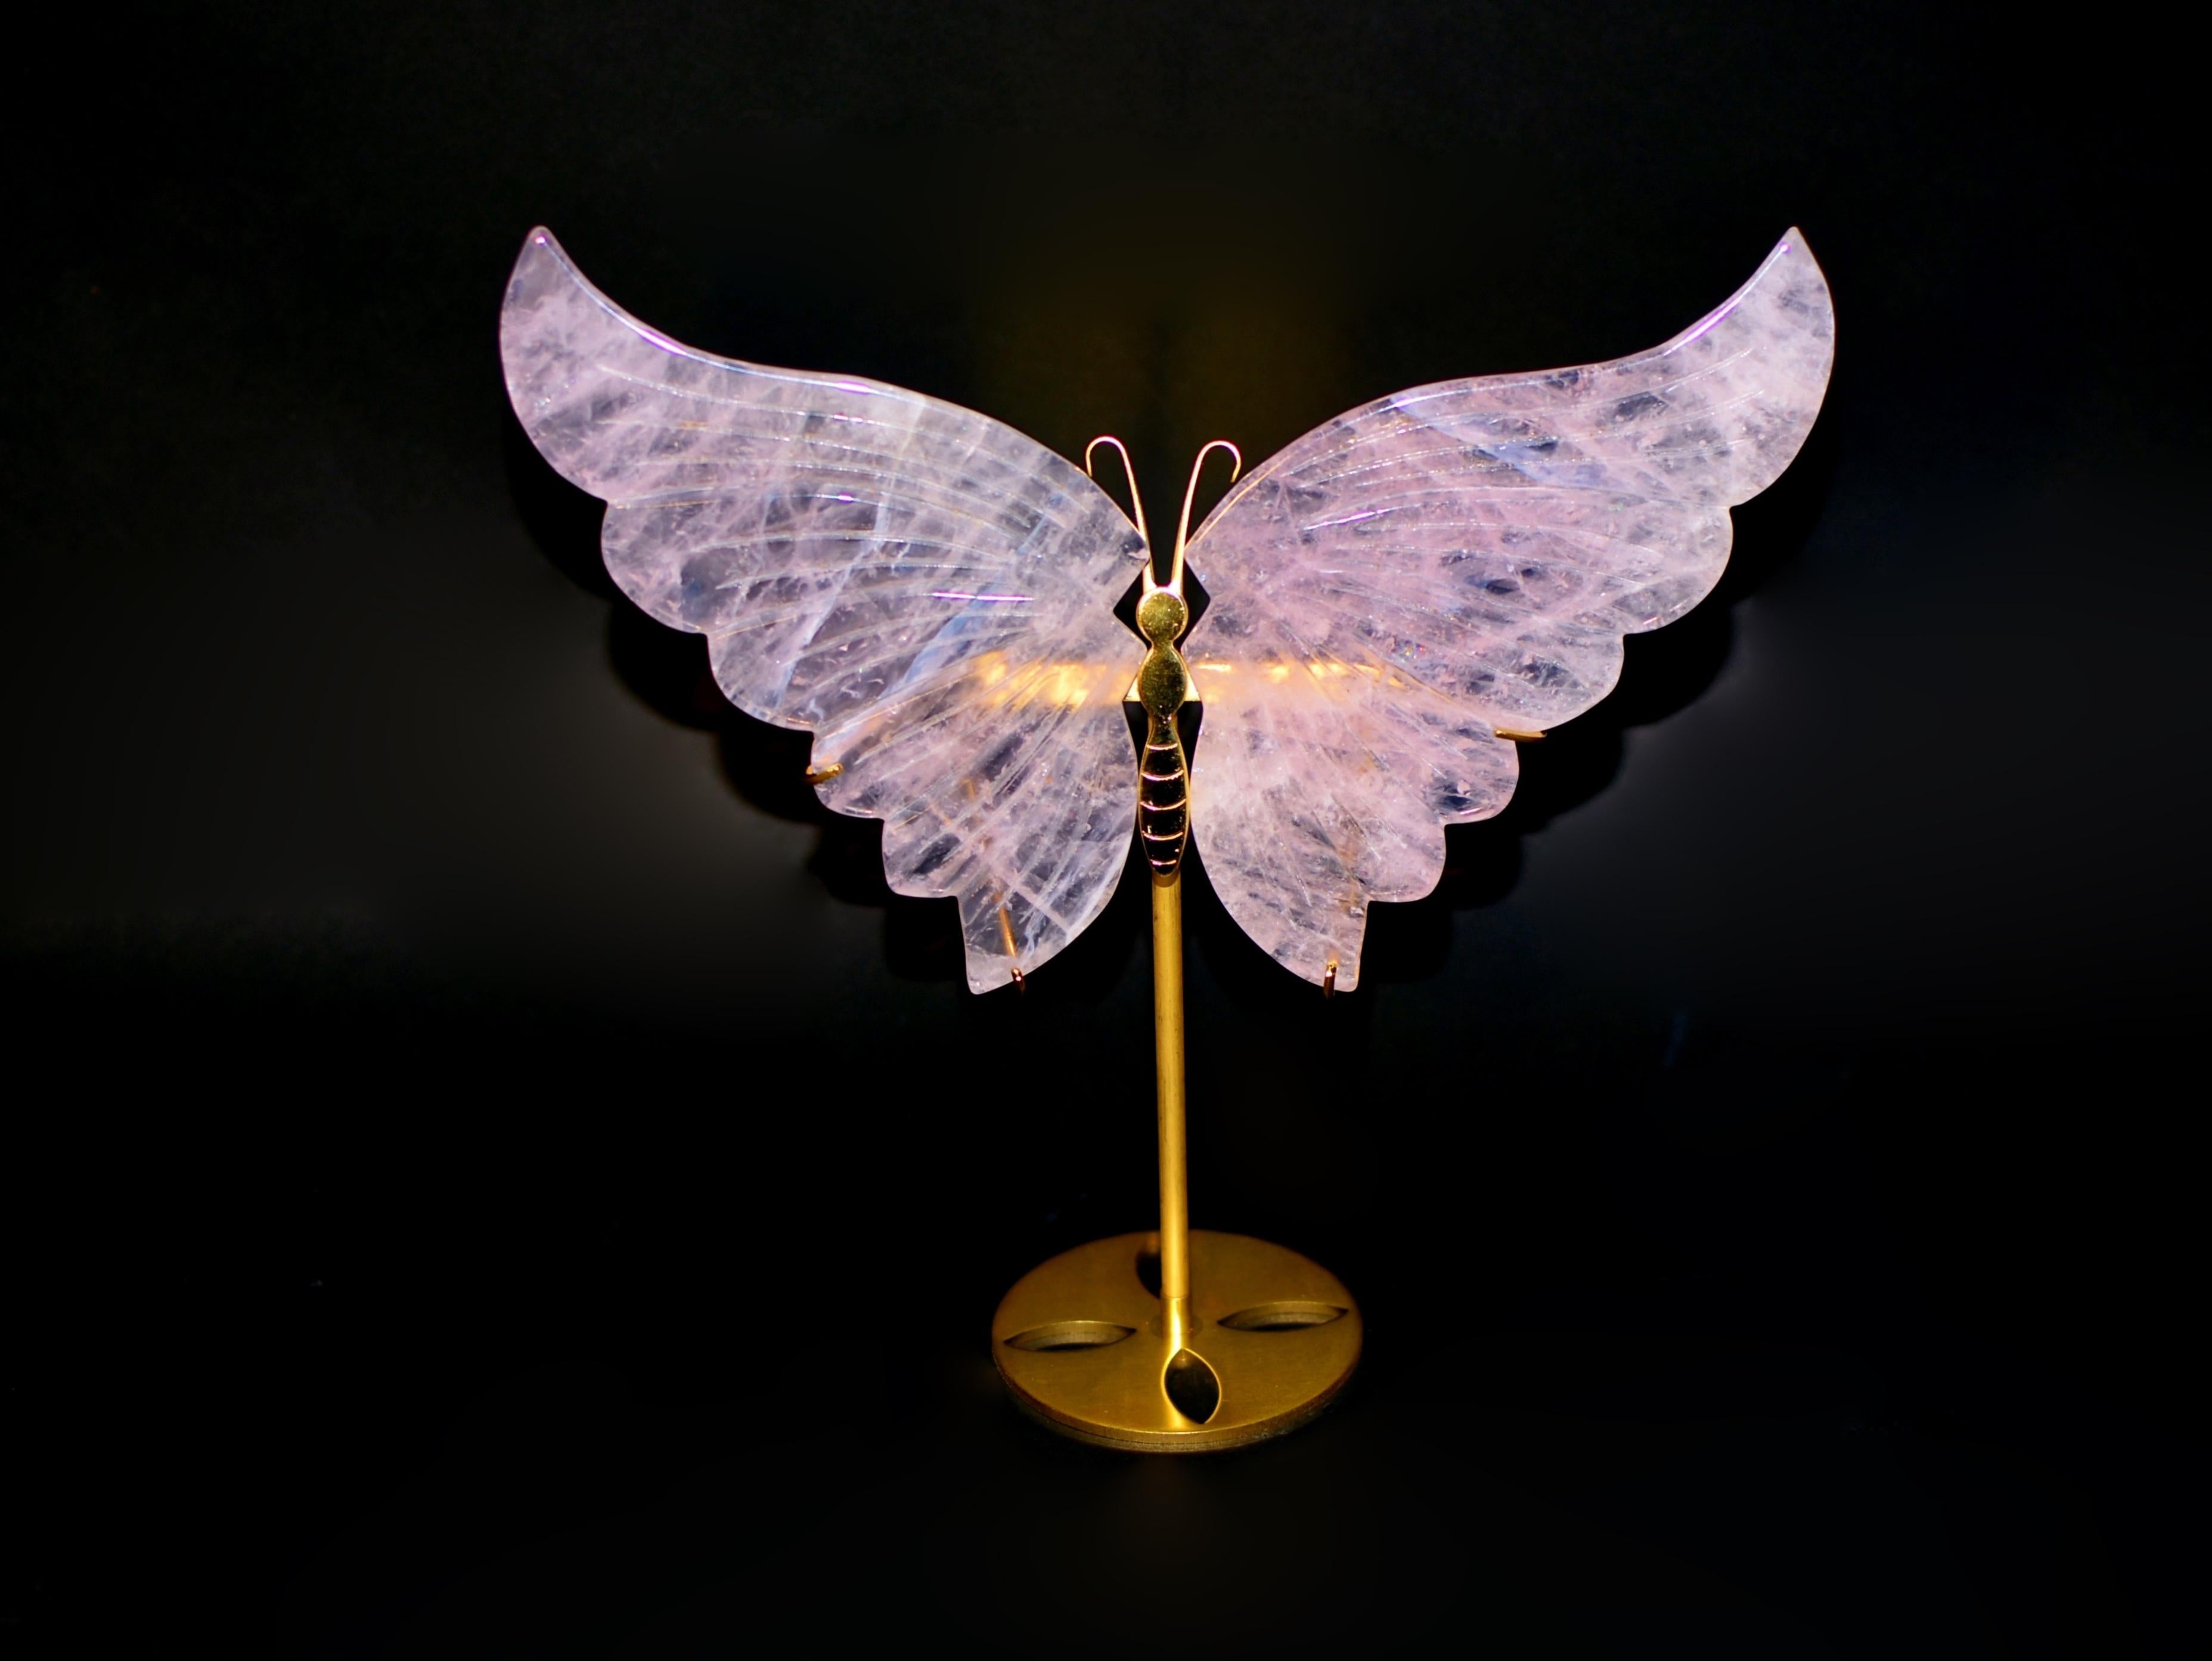 Erfreuen Sie sich an der ätherischen Schönheit einer atemberaubenden Skulptur - einem Rosenquarz-Schmetterling, der mit akribischer Kunstfertigkeit hergestellt wurde. Die aus feinstem, naturbelassenem Madagaskar-Rosenquarz geschnitzten Flügel zeugen